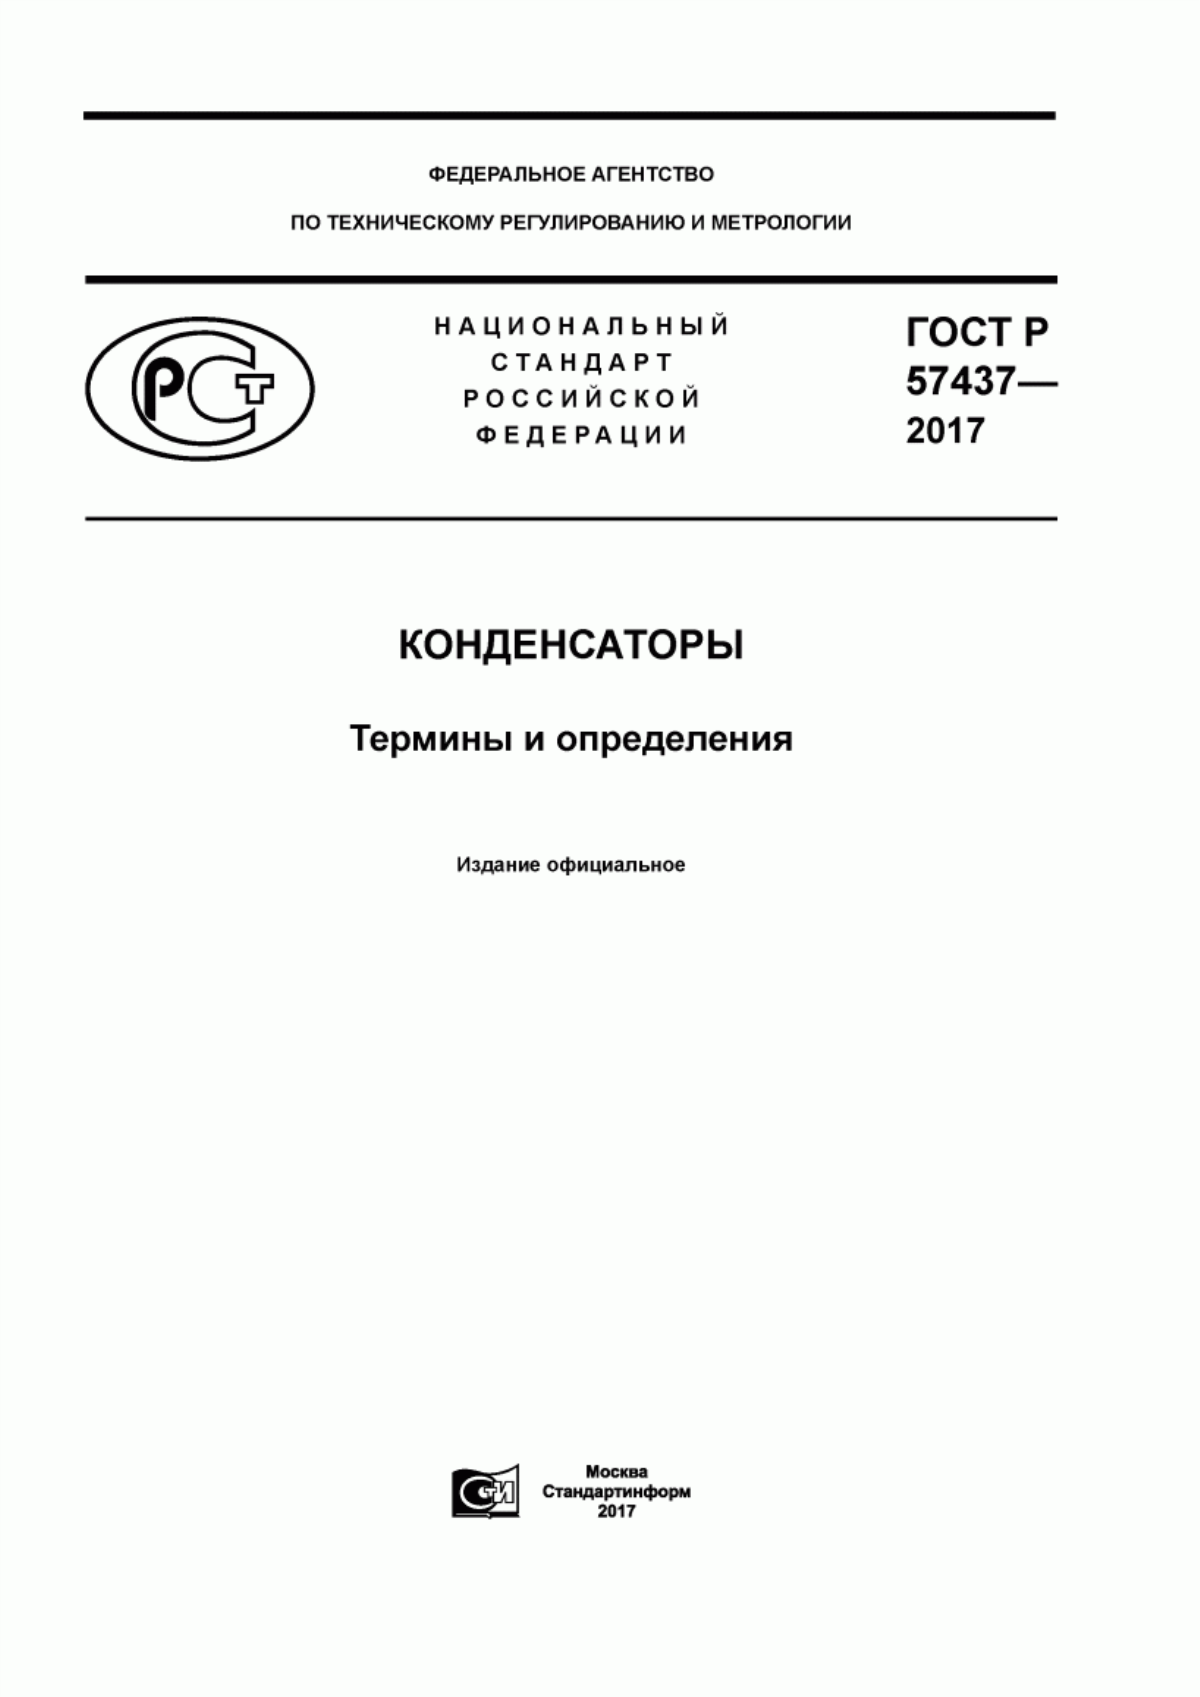 ГОСТ Р 57437-2017 Конденсаторы. Термины и определения